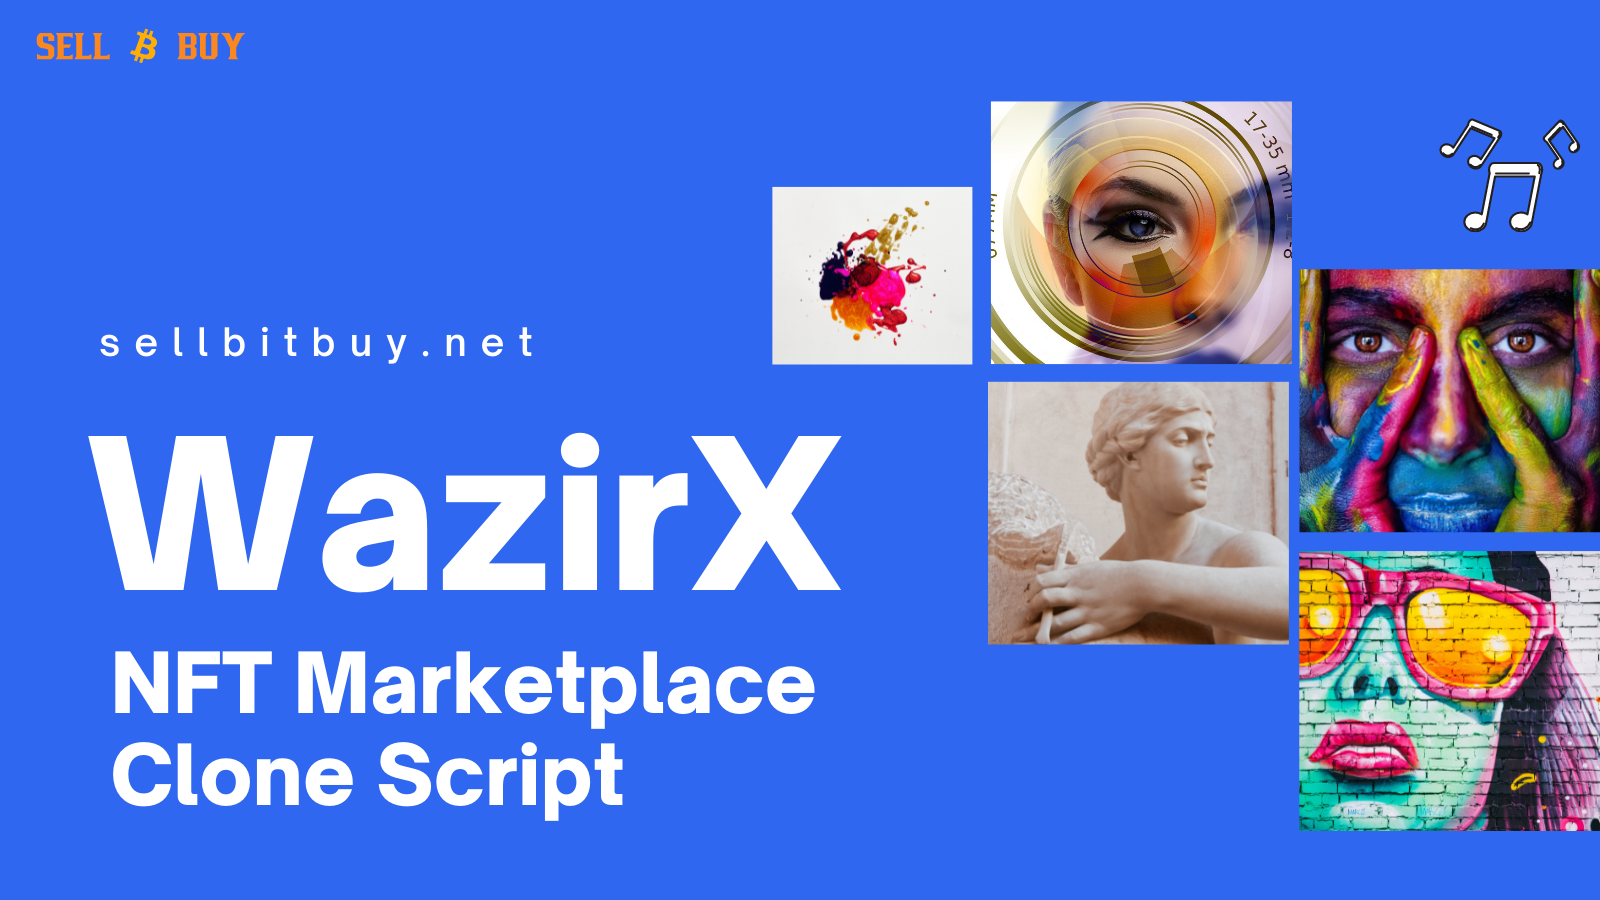 WazirX NFT Marketplace Clone Script - Create A NFT Marketplace Like WazirX to Buy and Sell NFTs